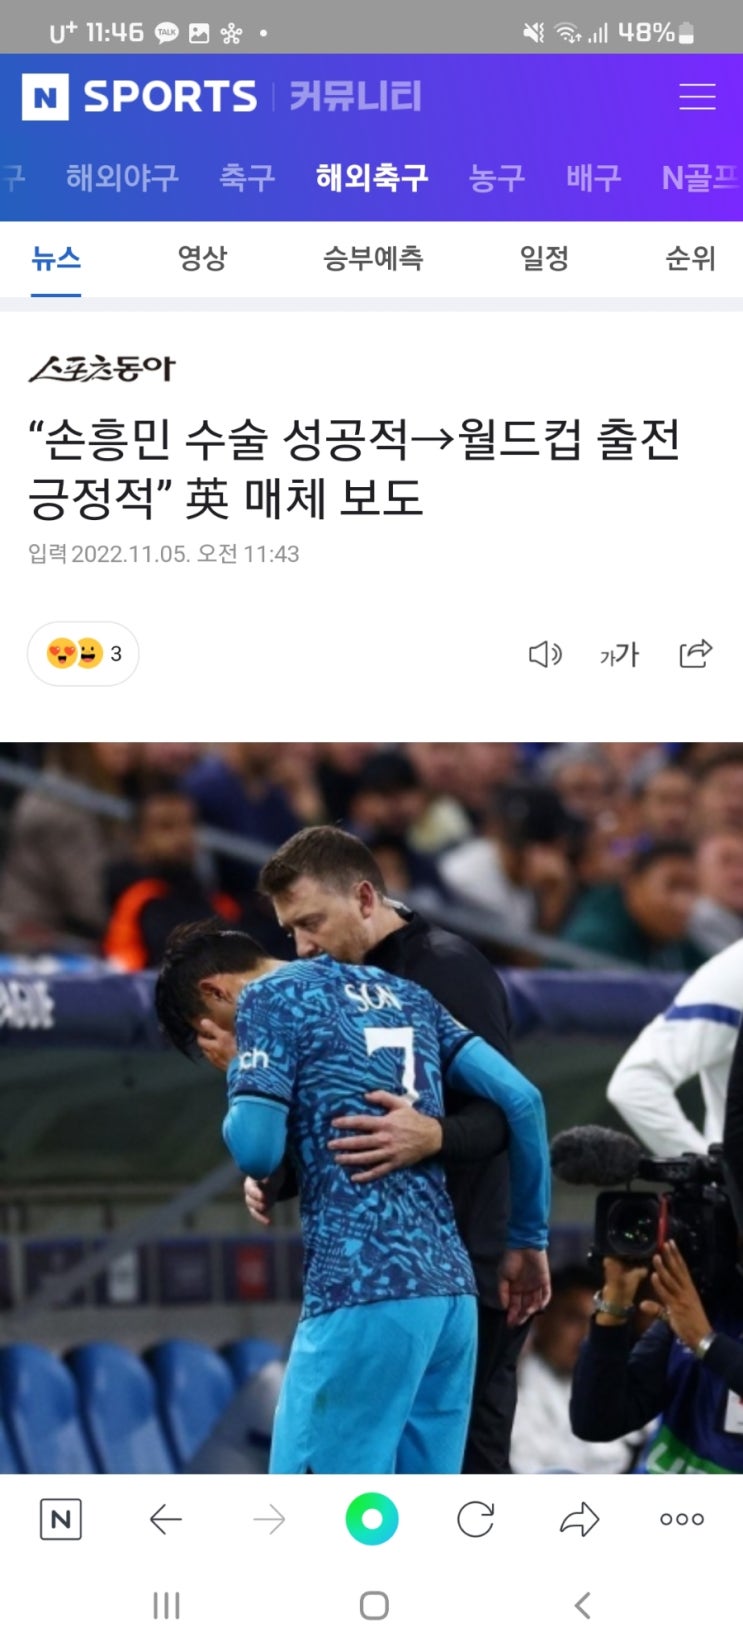 “손흥민 수술 성공적→월드컵 출전 긍정적” 英 매체 보도